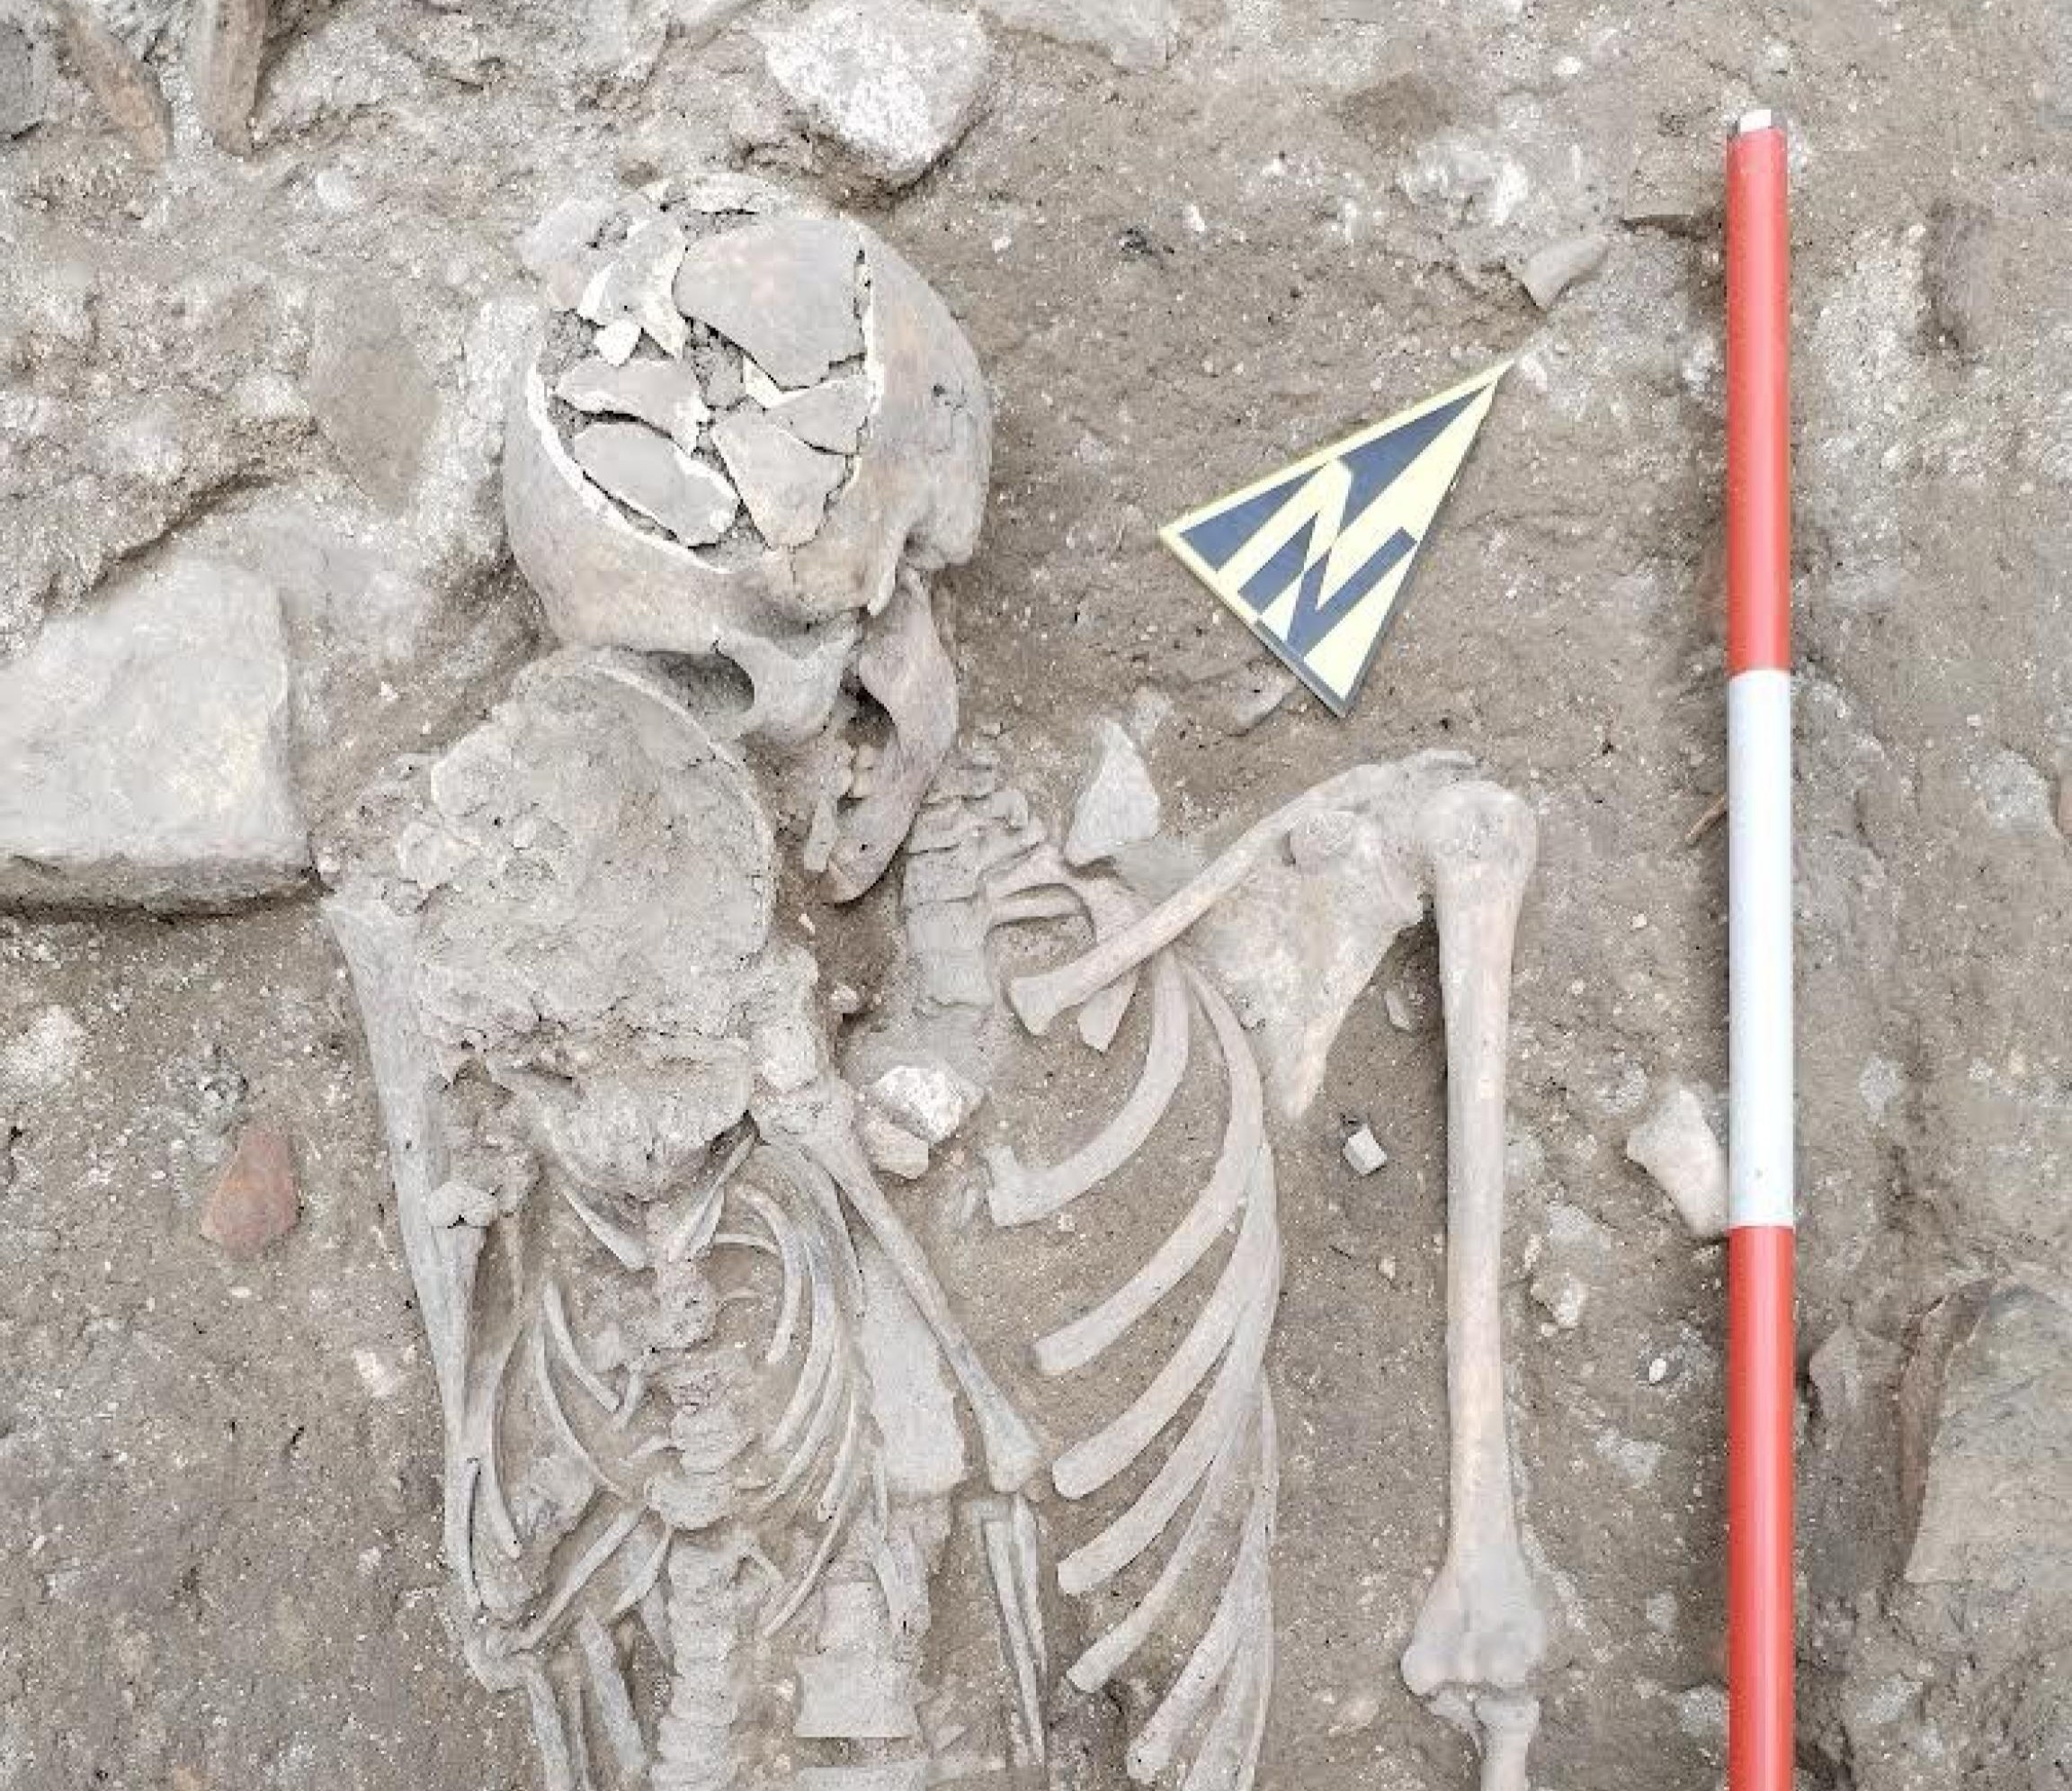 Fano, l’abbraccio d’amore tra i resti di una mamma e del suo bambino negli scavi archeologici di Piazza Costa